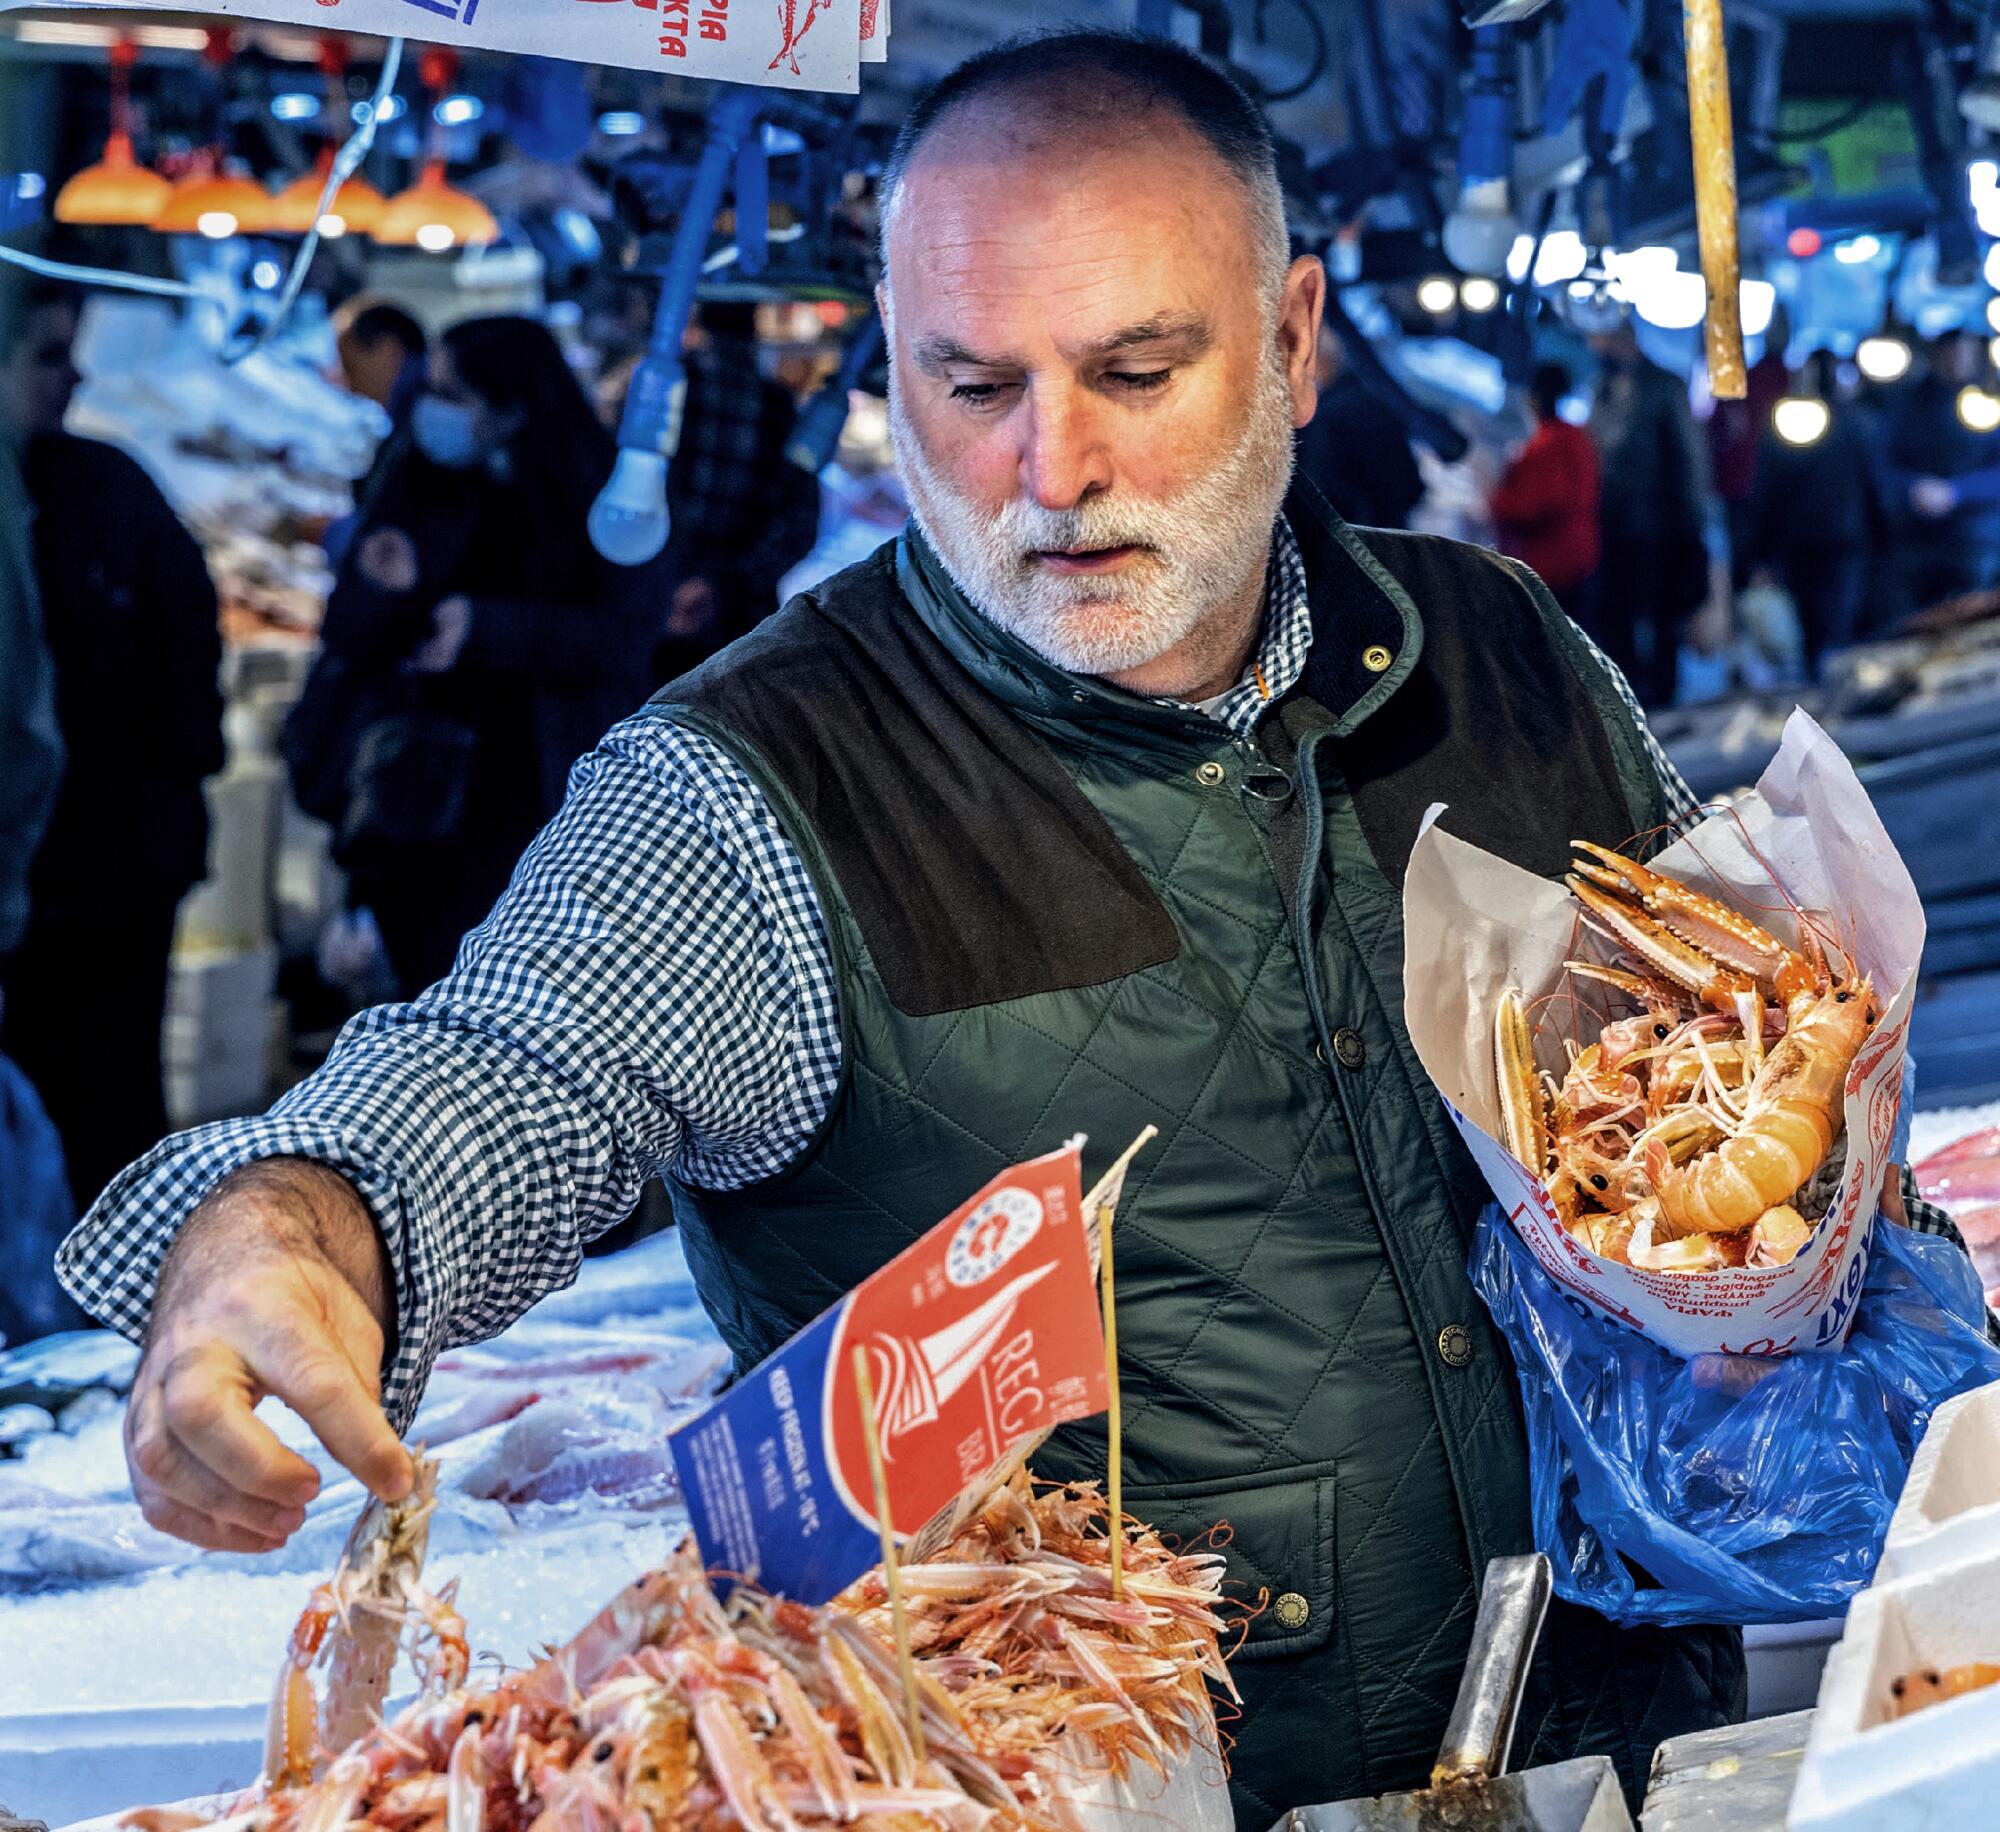 Chefkoch José Andrés besucht den Athener Markt in Griechenland.  An einem Imbissstand hält er ein Bündel Meeresfrüchte unter einem Arm.